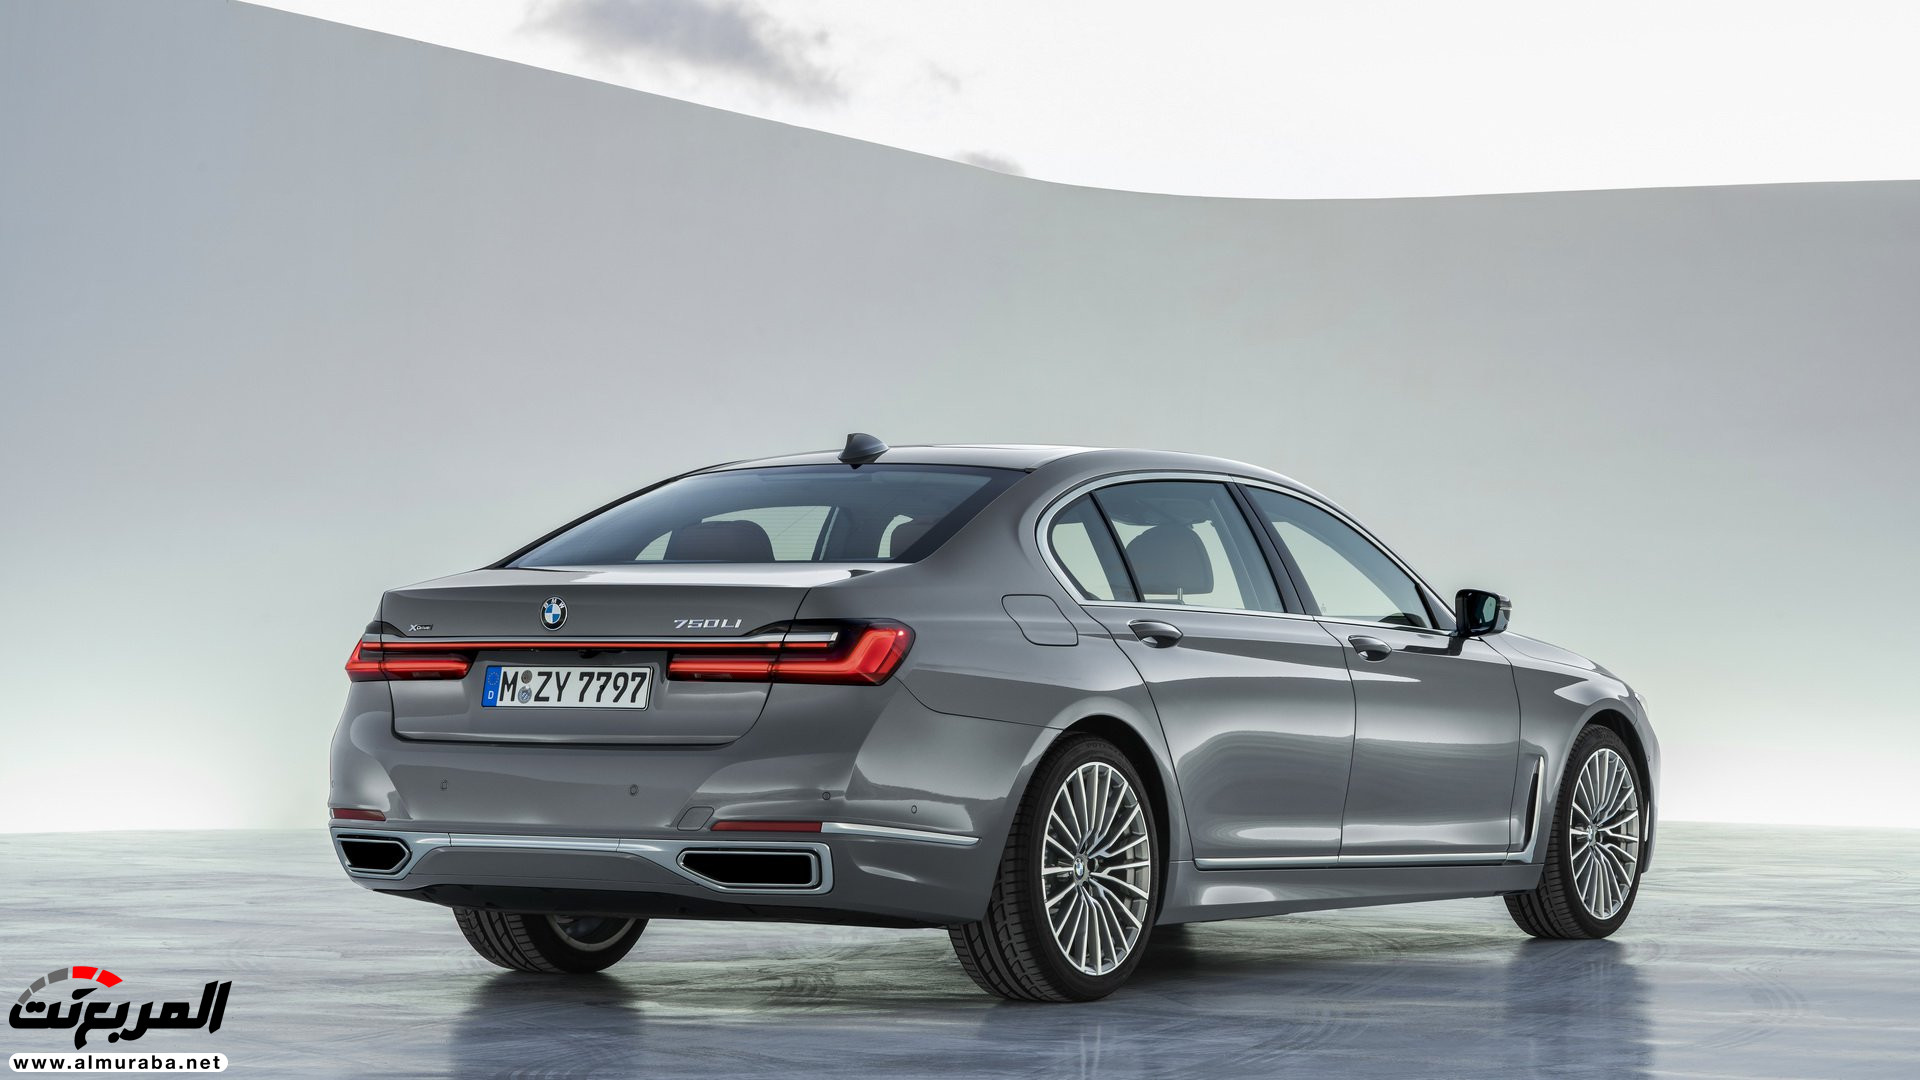 بي ام دبليو الفئة السابعة 2020 المحدثة تكشف نفسها رسمياً "صور ومواصفات" BMW 7 Series 275